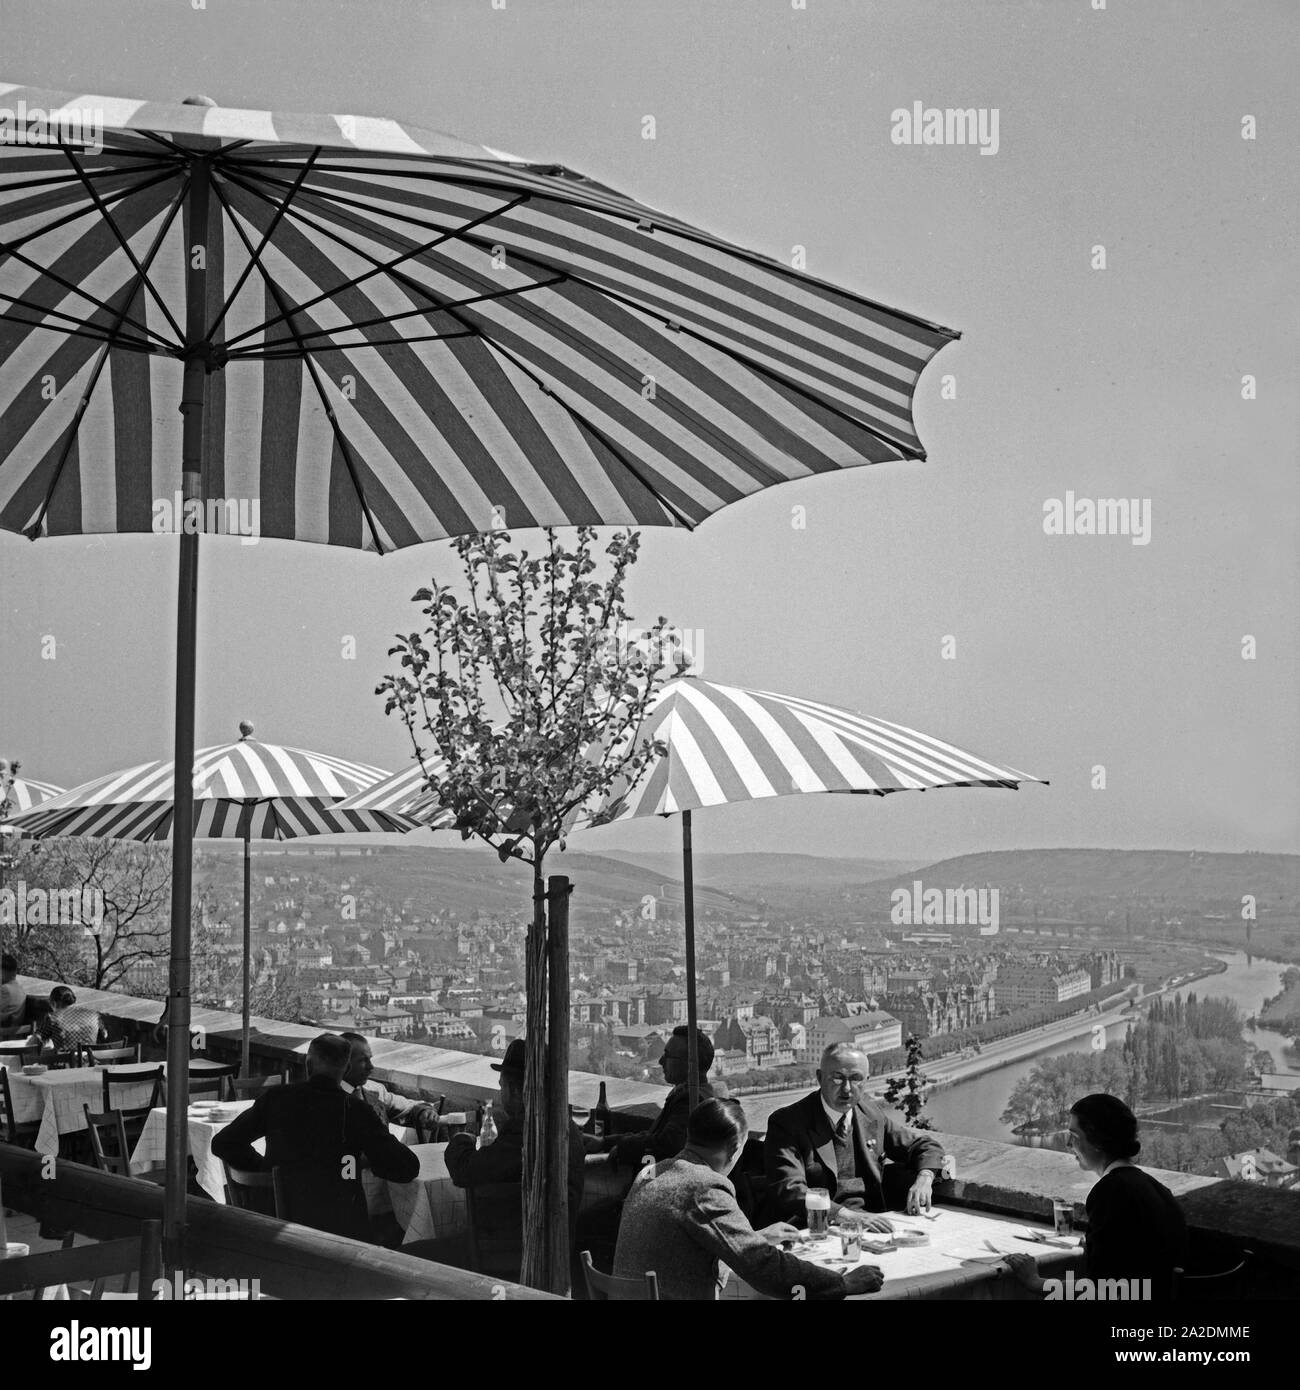 Gäste sitzen in einer Außengastronomie über den Dächern von Würzburg, Deutschland 1930er Jahre. Guests sitting on a terrace of a restaurant over the rooftops of Wuerzburg, Germany 1930s. Stock Photo